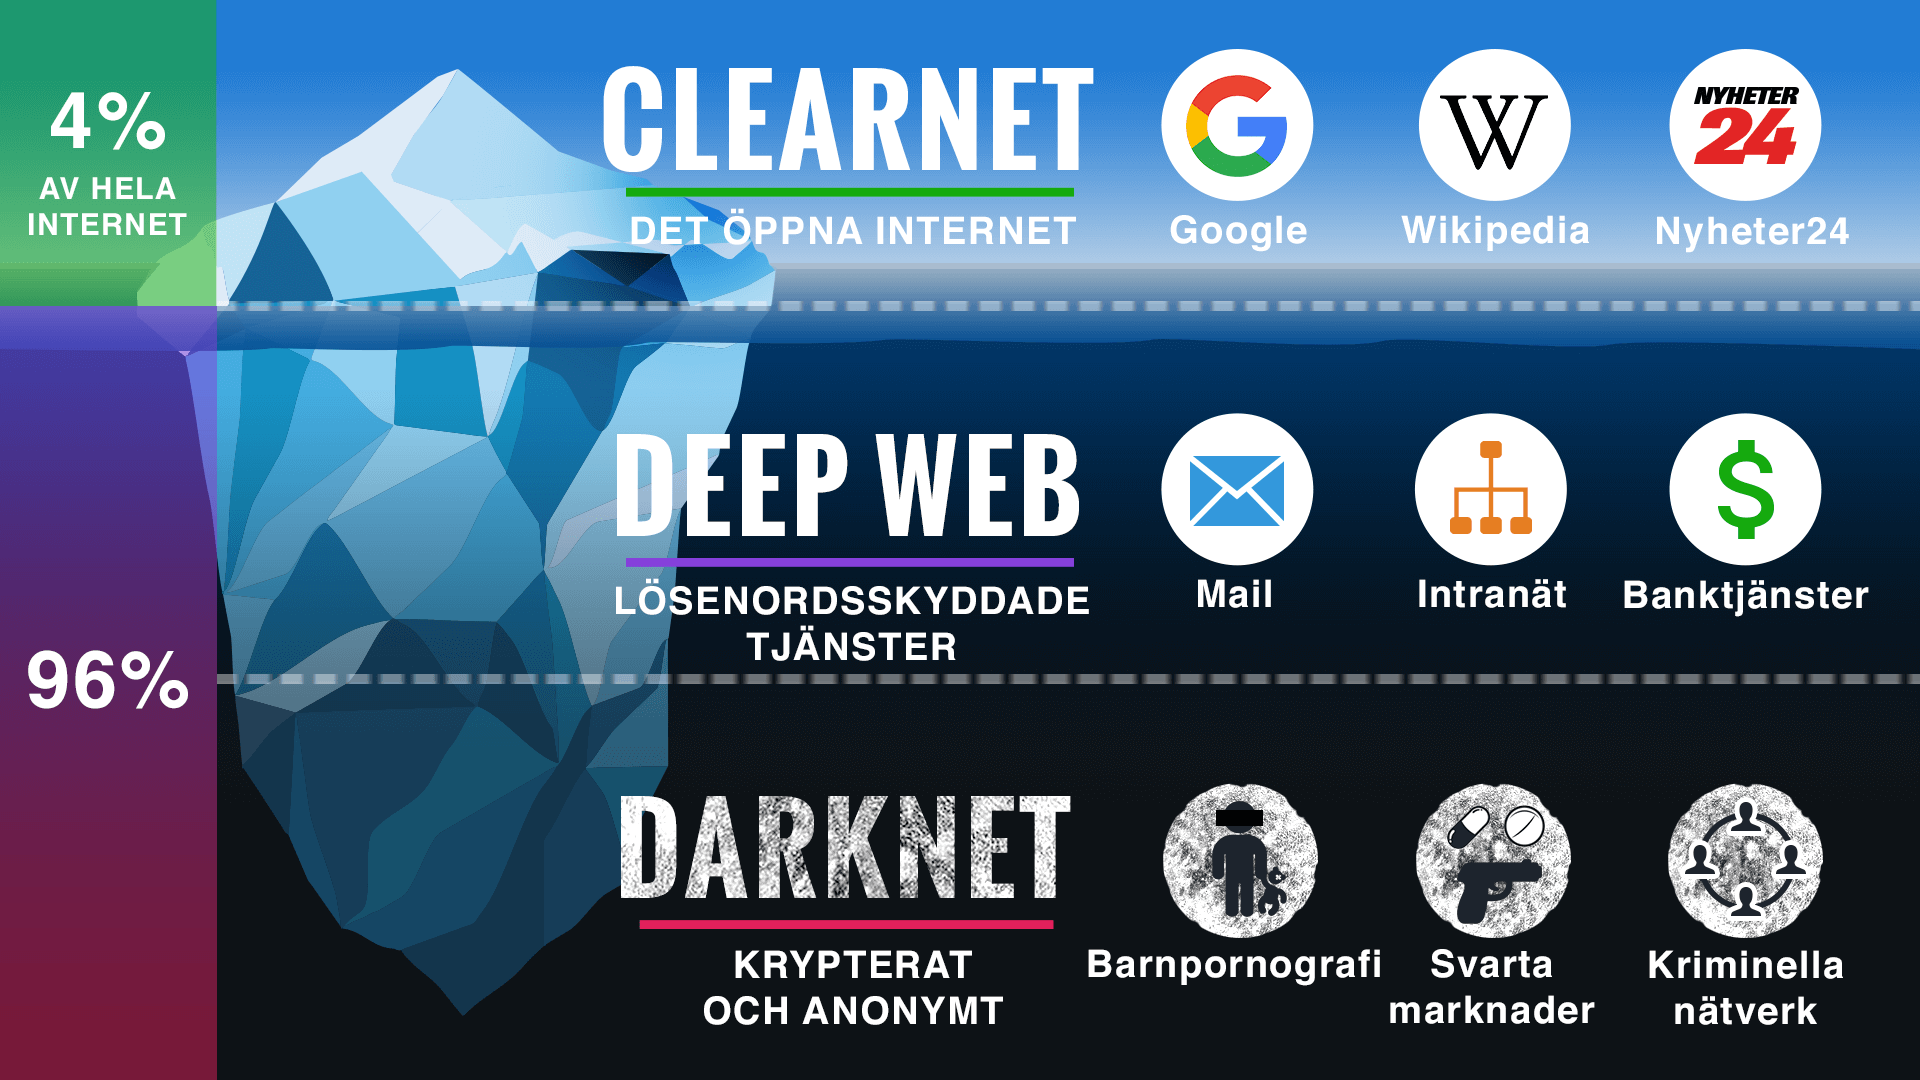 Darknet är den del av internet som består av krypterade nätverk och där en enorm mängd gömda sajter finns​. Dessa sajter kan bara nås med hjälp av speciella programvaror.